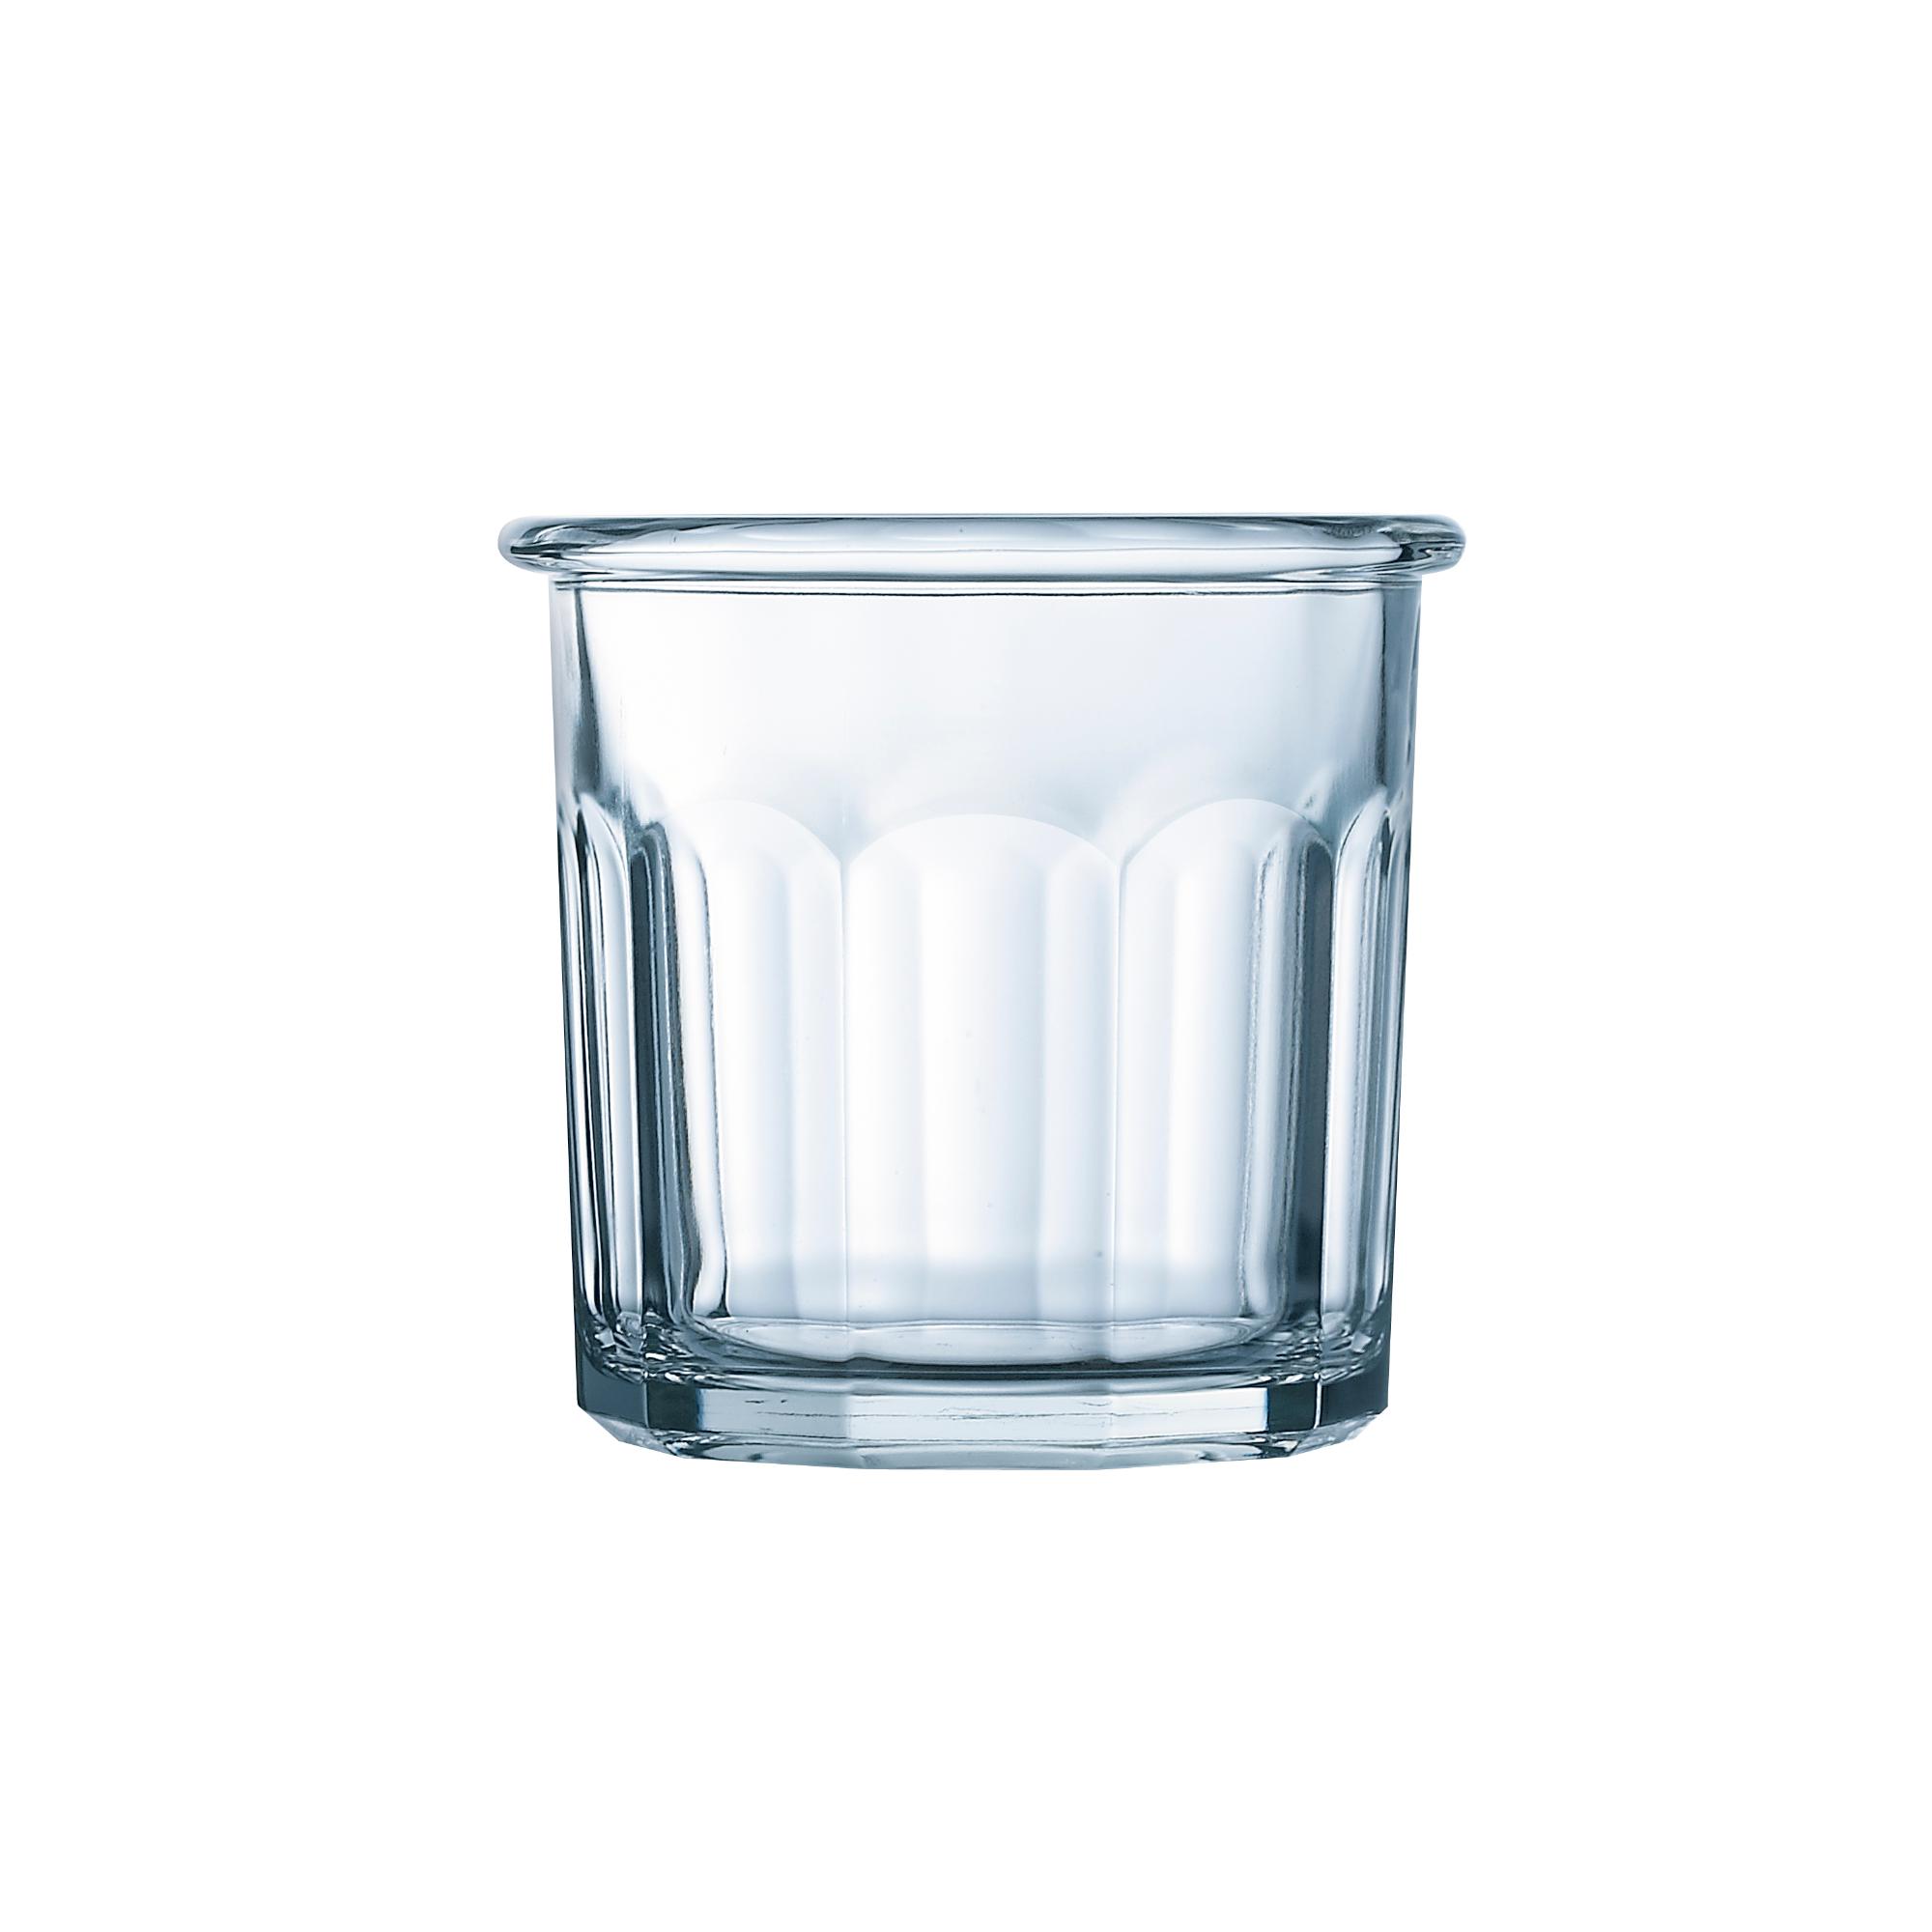 Escale glass, 310ml